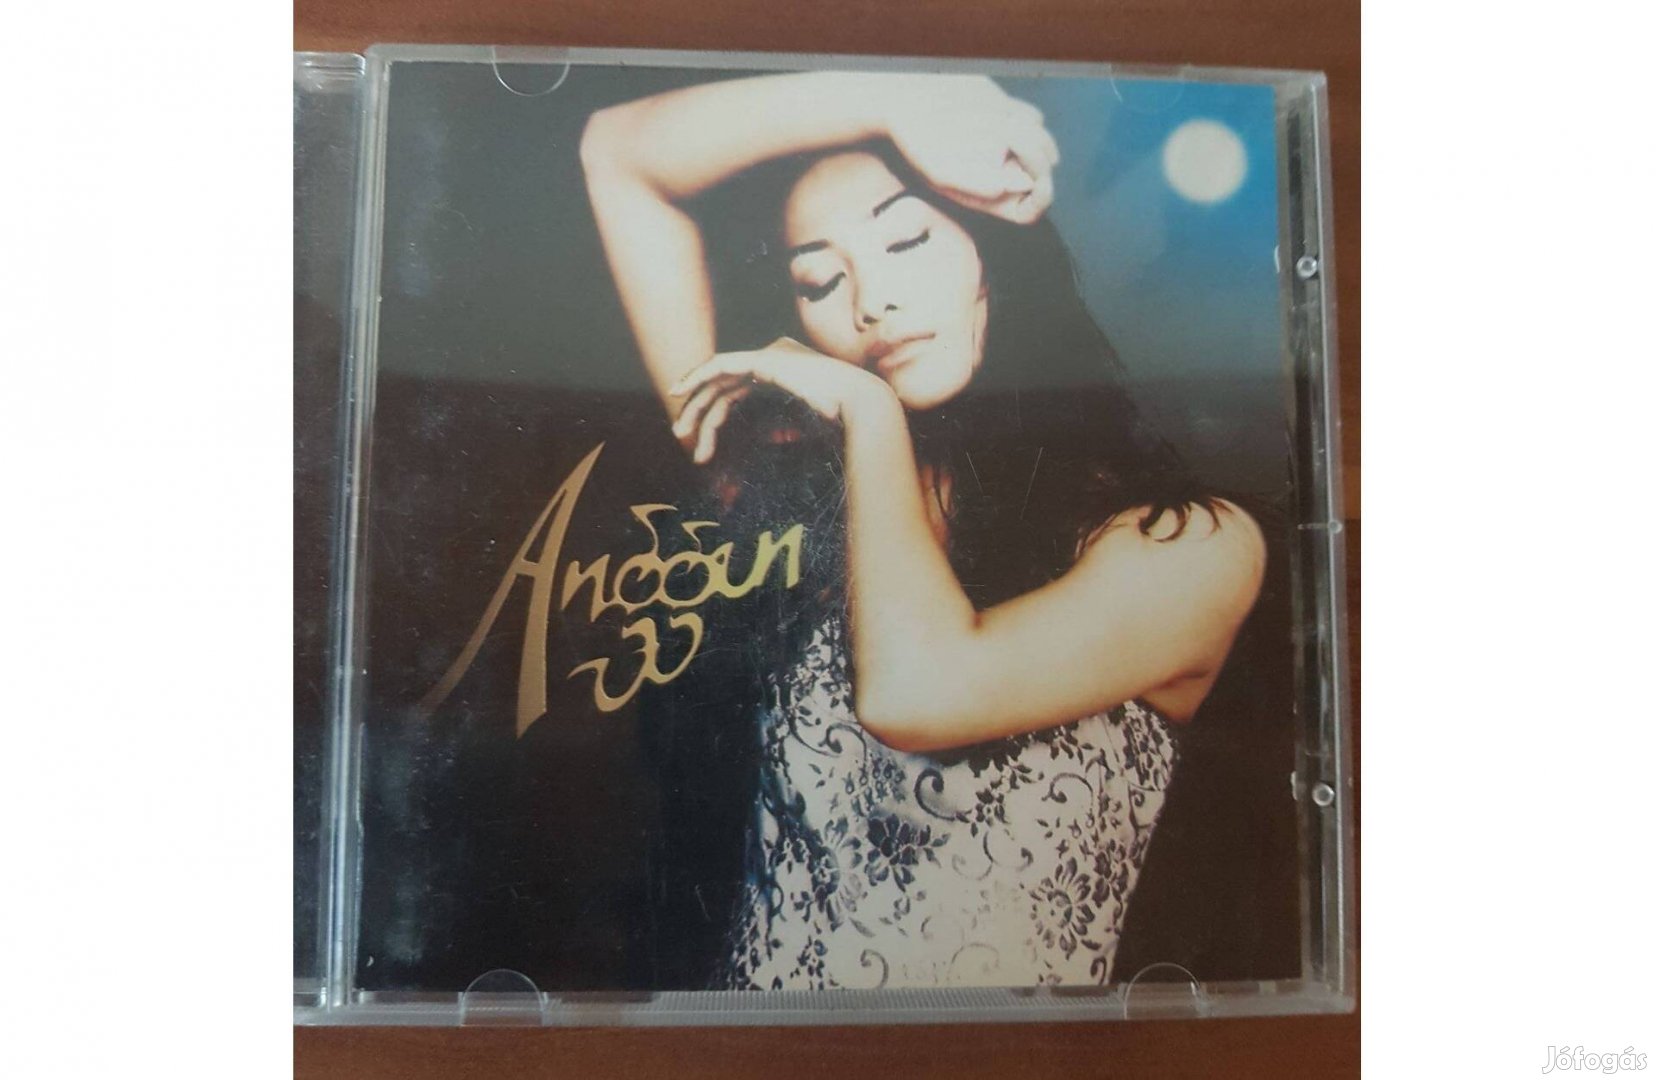 Anggun - Anggun CD